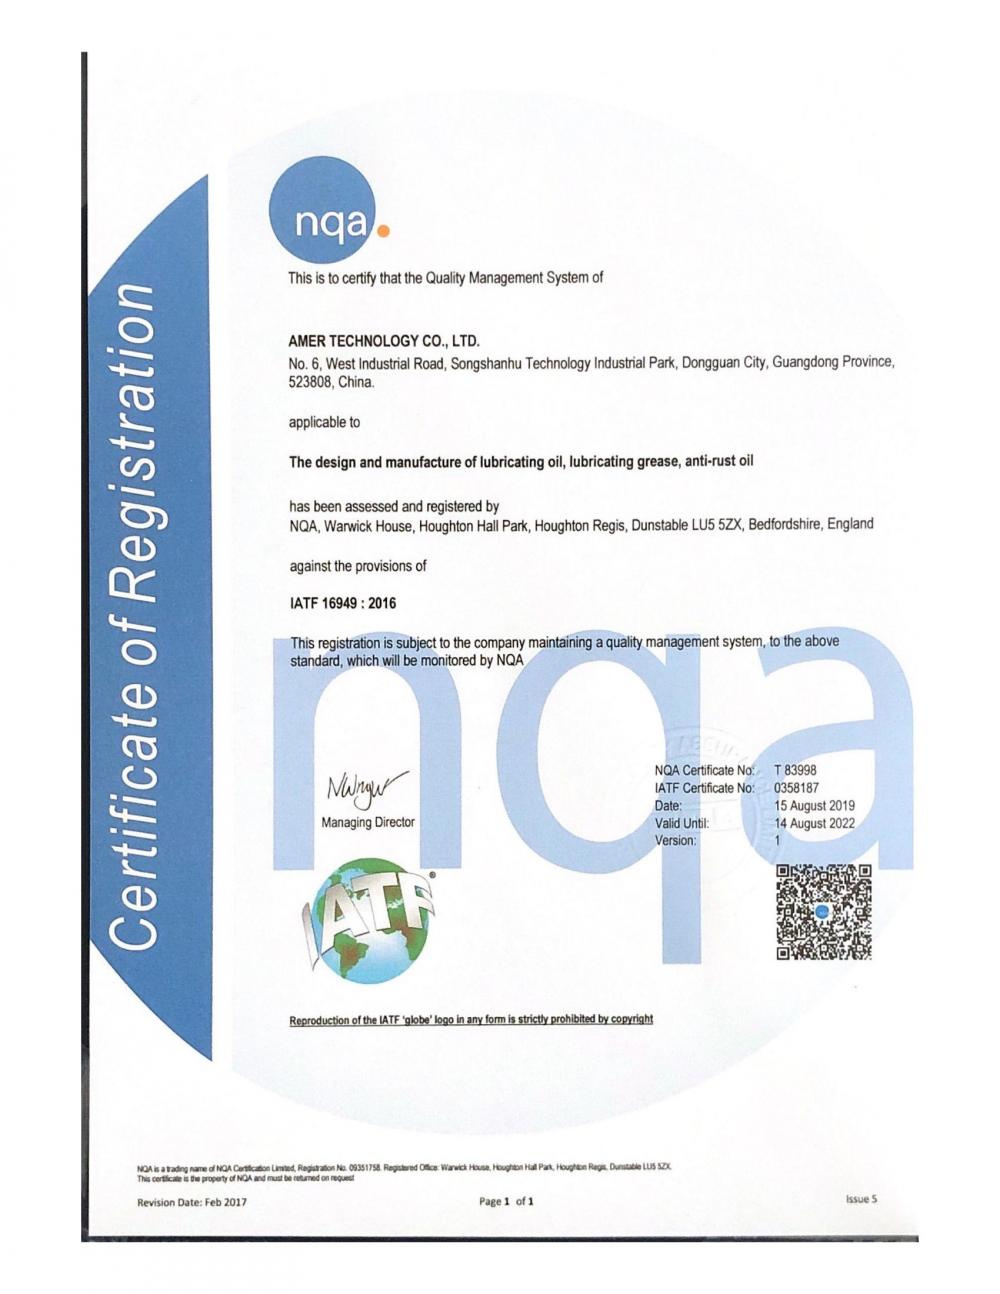 IATF certification of Anmei Technology Co., LTD